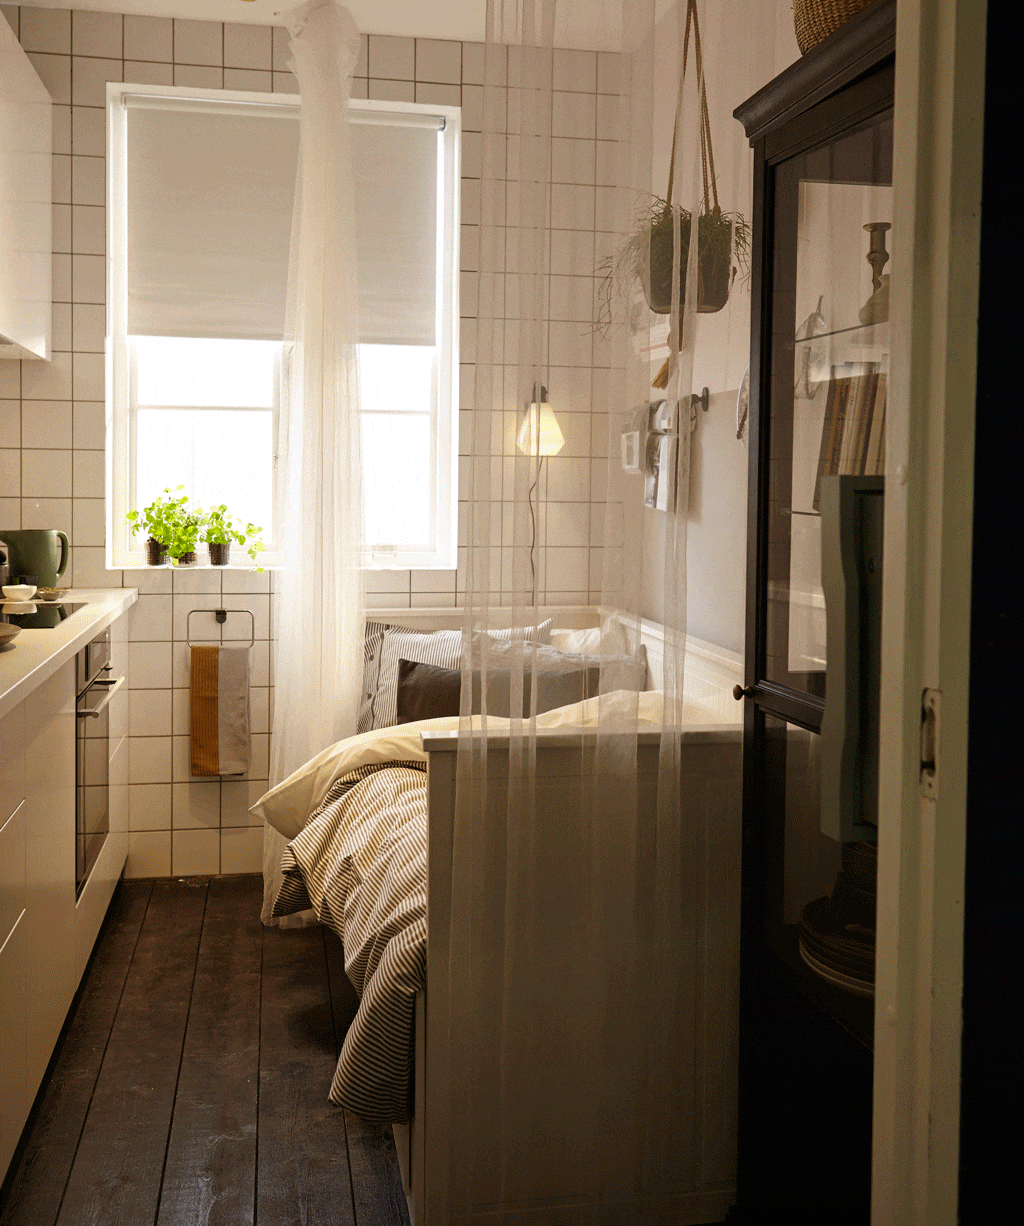 Pieni keittiö, jossa nukkumapaikka - Hemnes -sohva Ikeasta